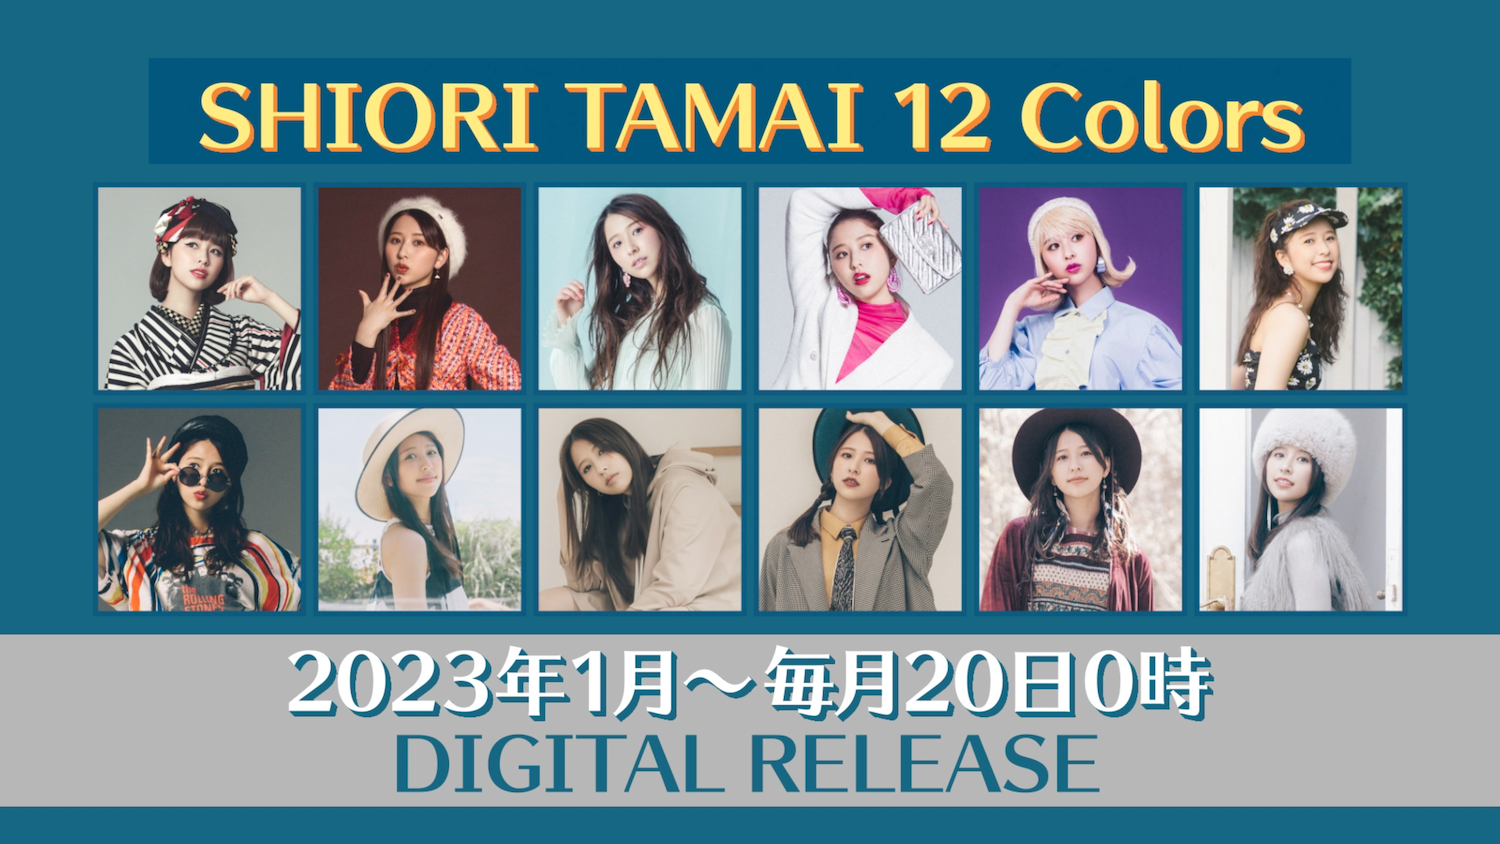 桃色幸运草Z玉井诗织SOLO企划『SHIORI TAMAI 12 Colors』启动！连续12个月发行新歌 - itotii